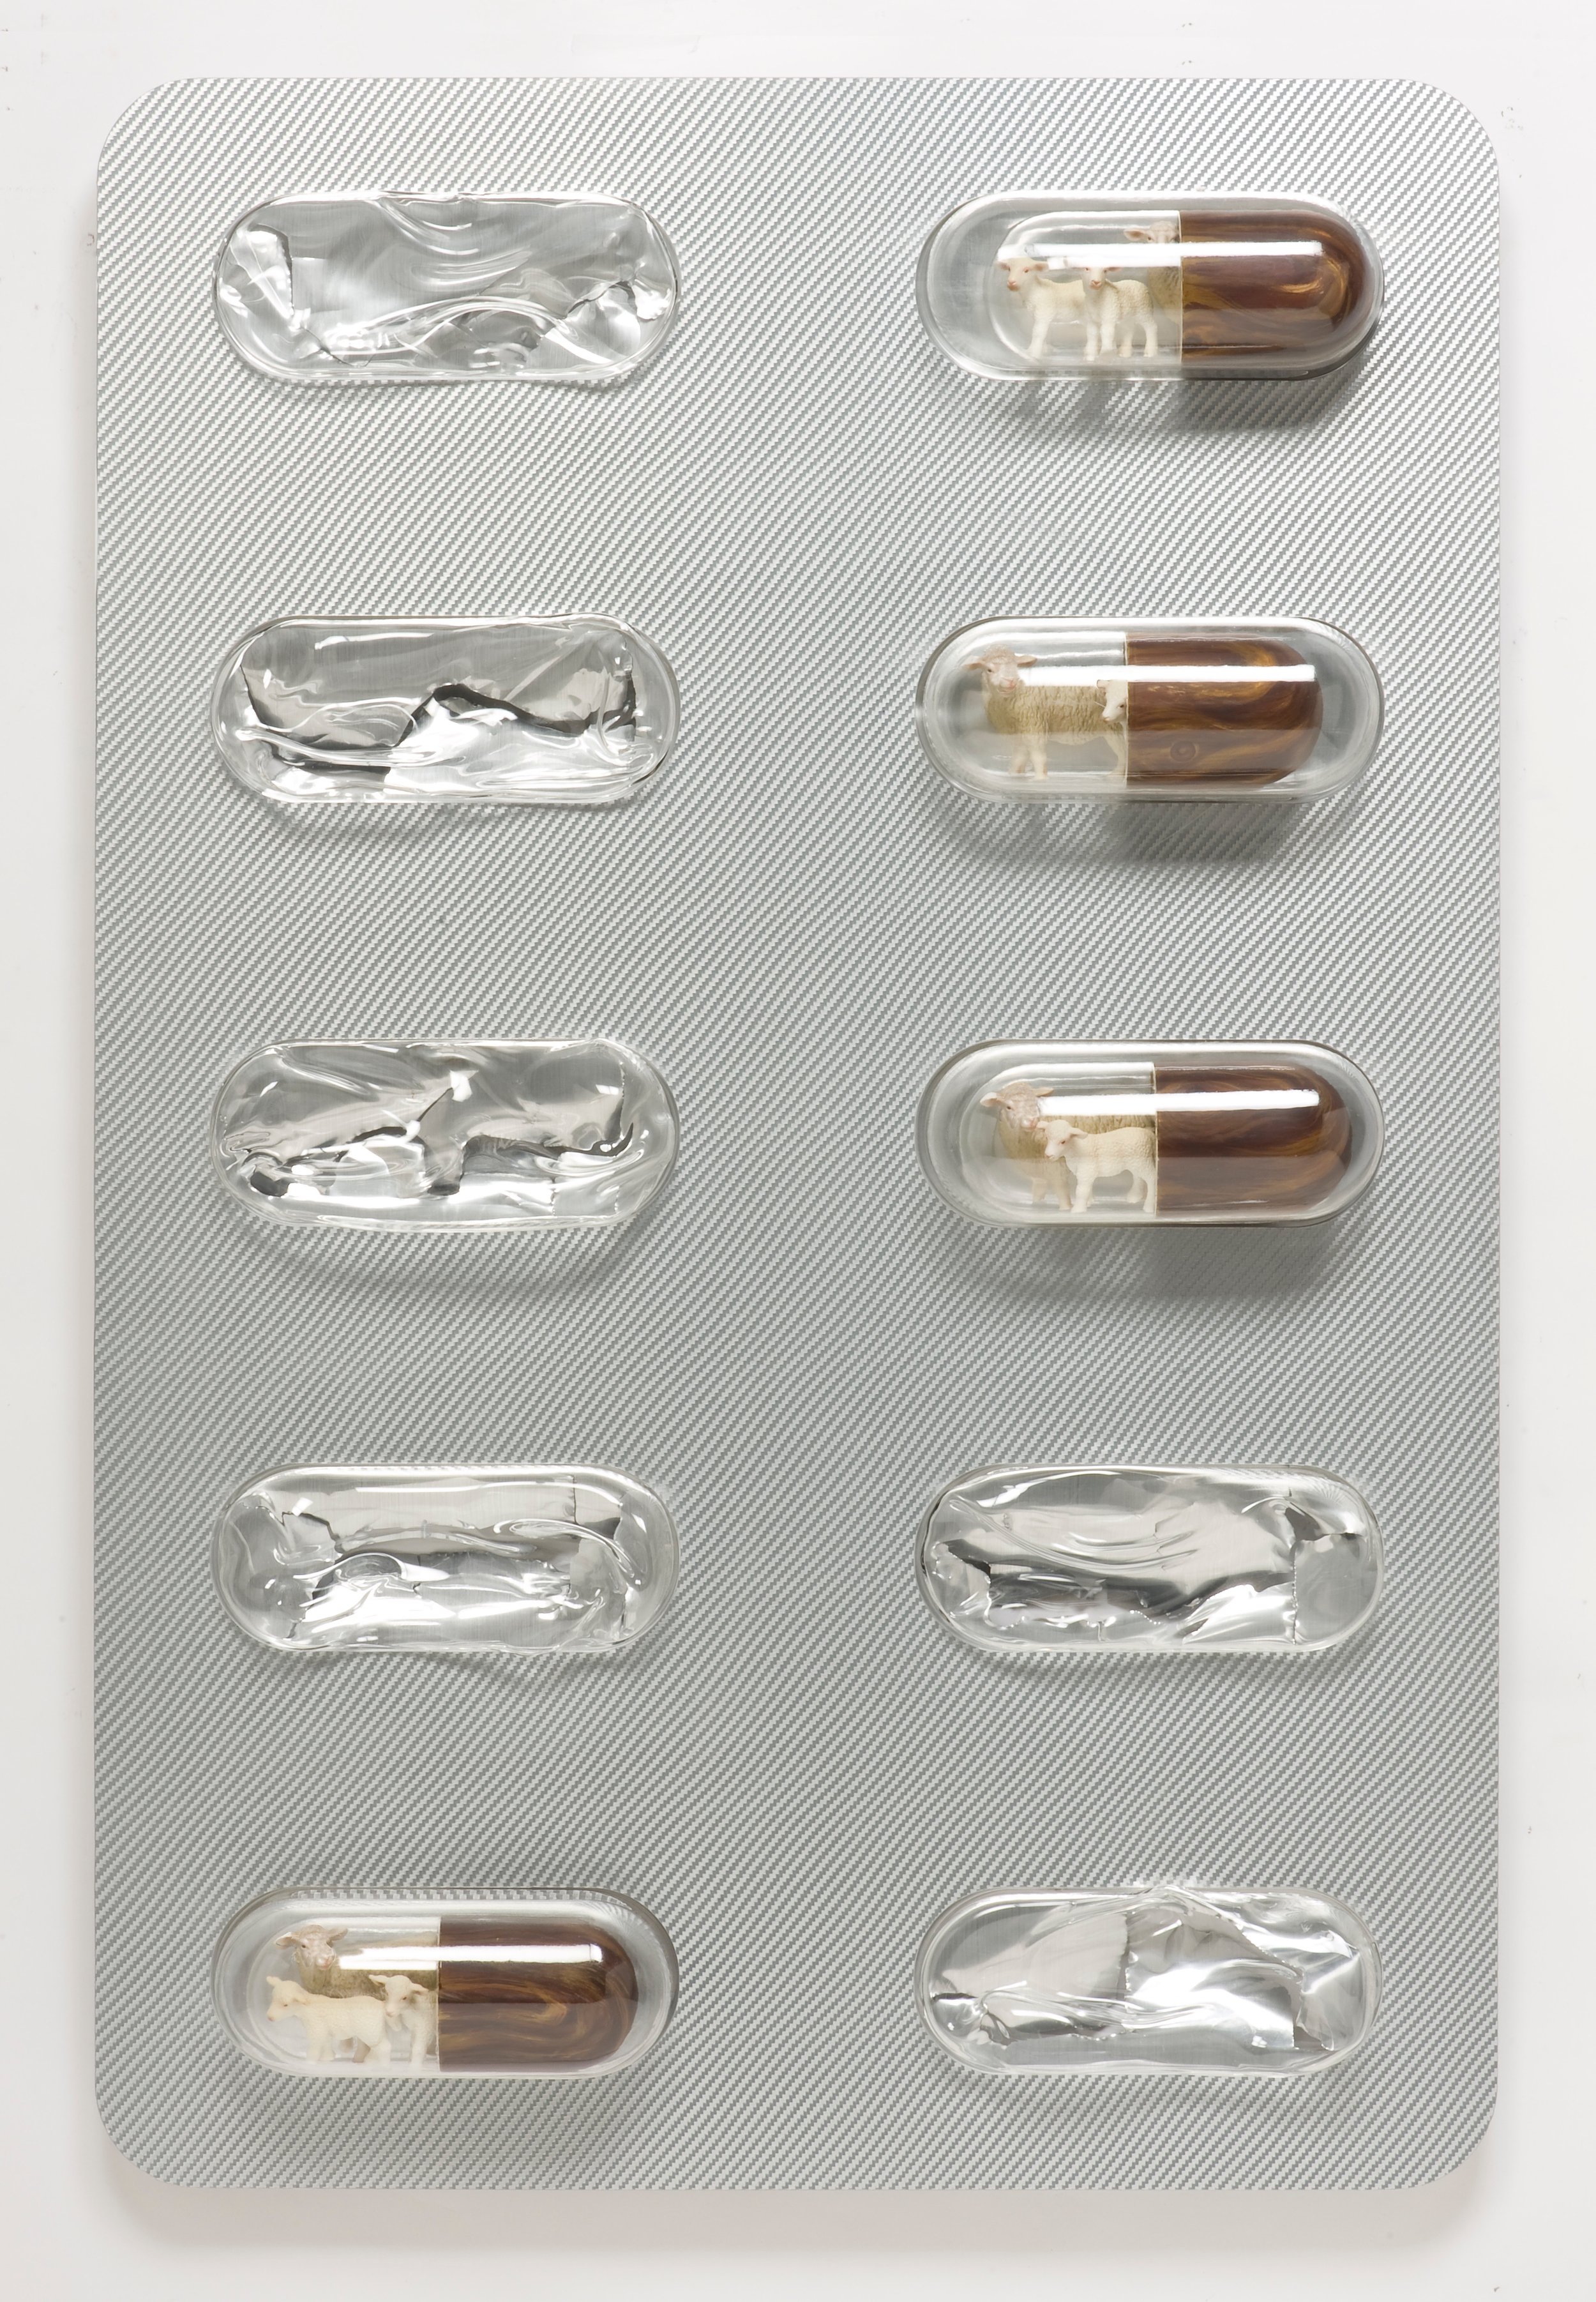 Farmaceutical.jpg